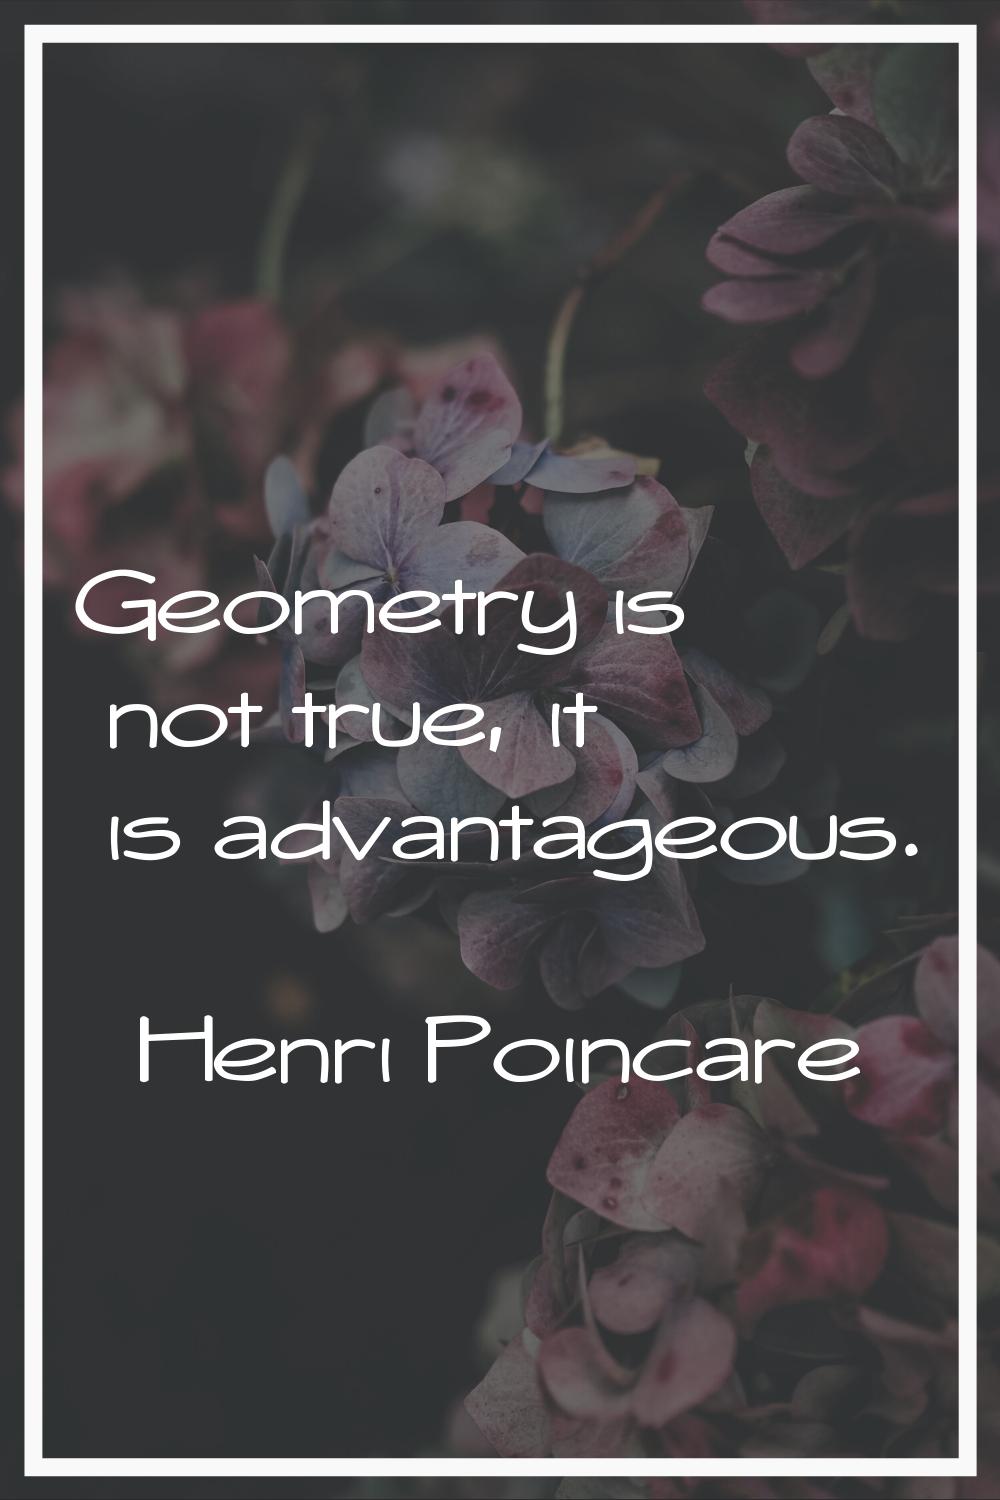 Geometry is not true, it is advantageous.